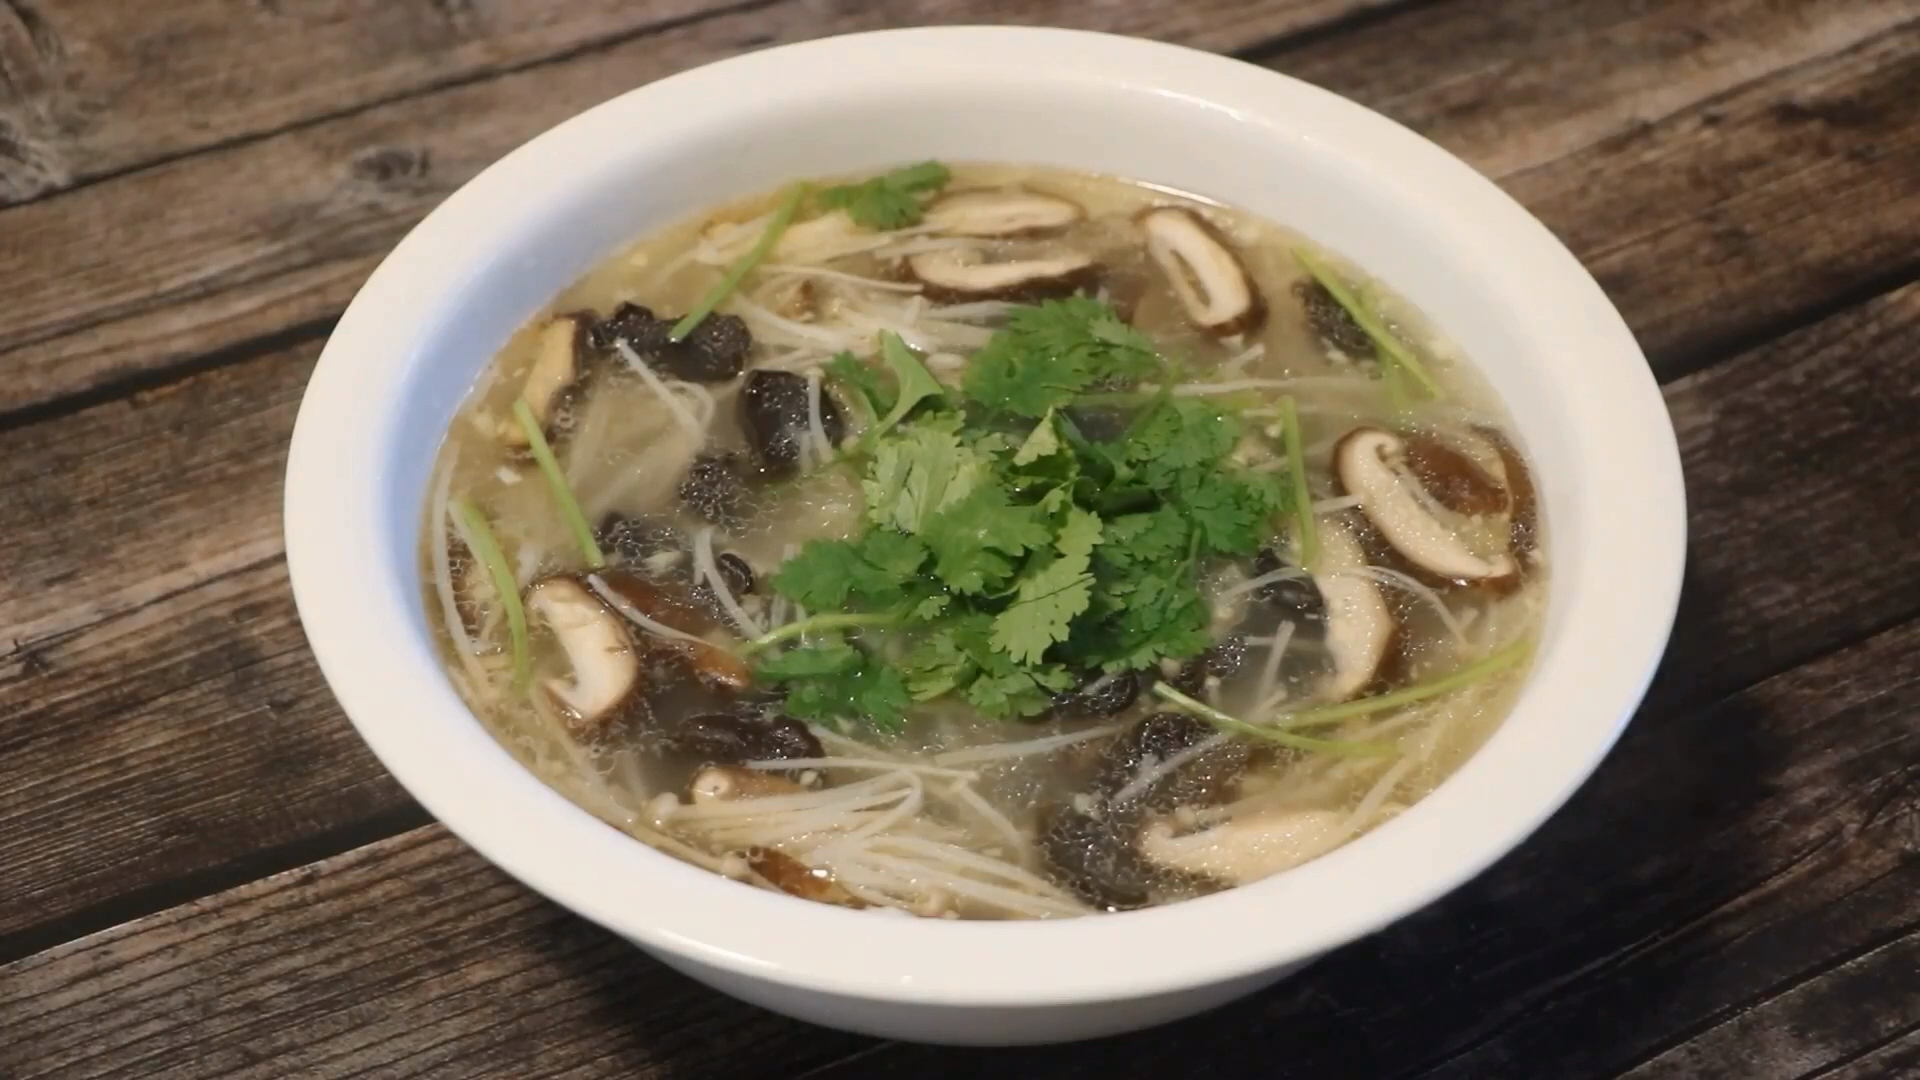 教你一道养生三菌汤的做法,鲜美可口,做法简单!